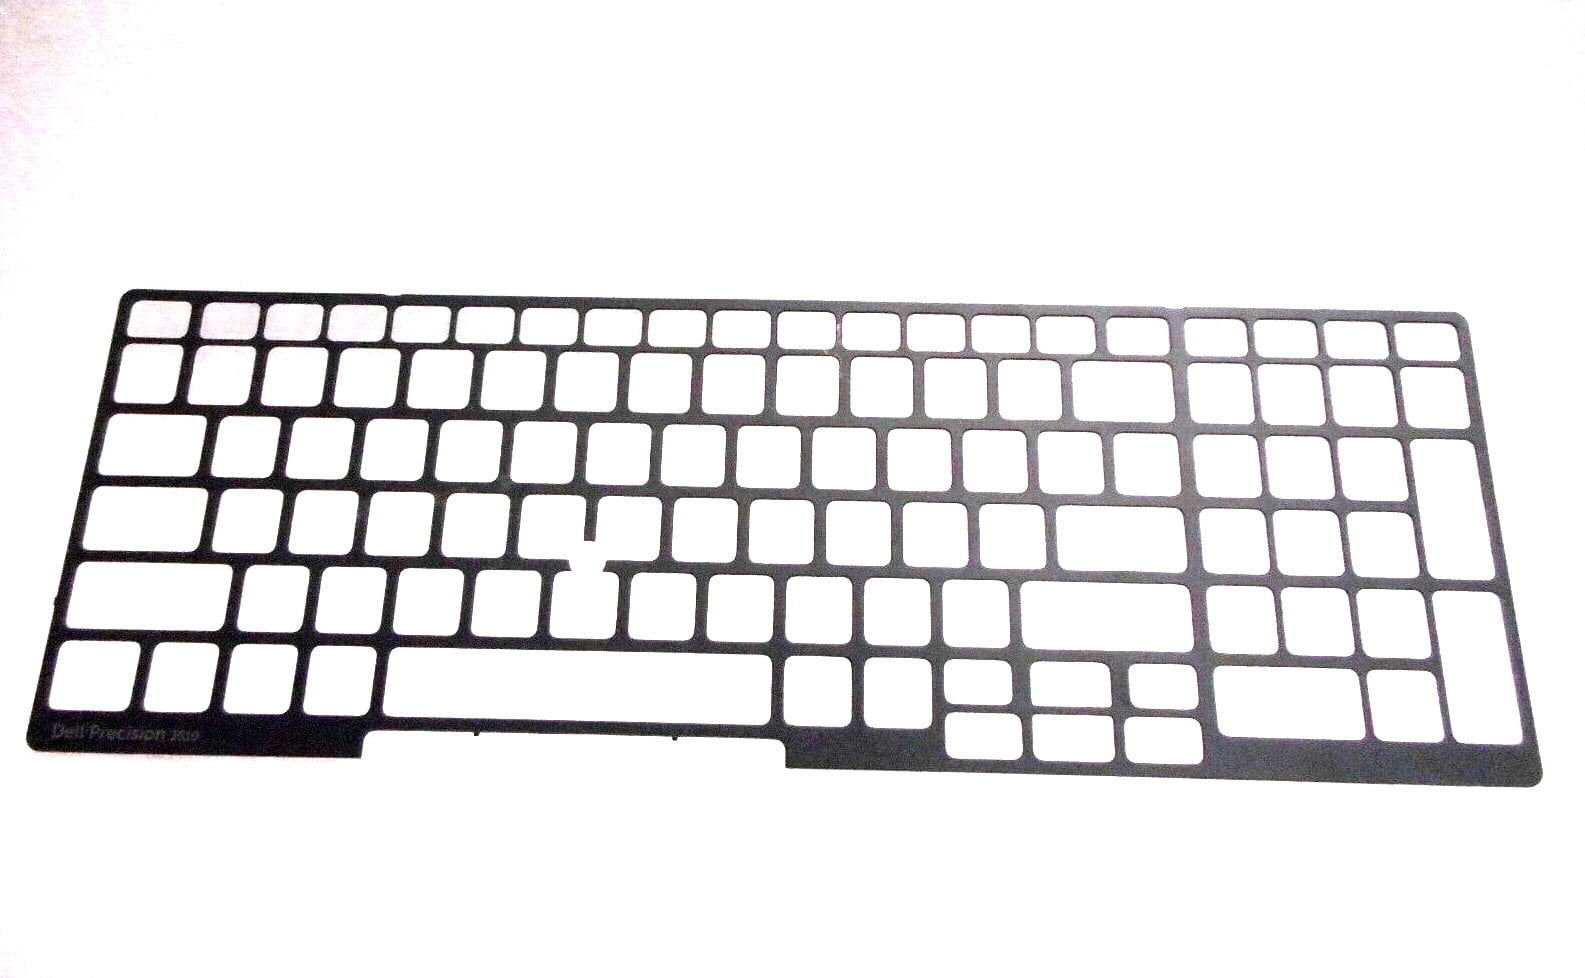 Genuine HP EliteBook 850 G3 Series US Keyboard With Frame SG-81110 